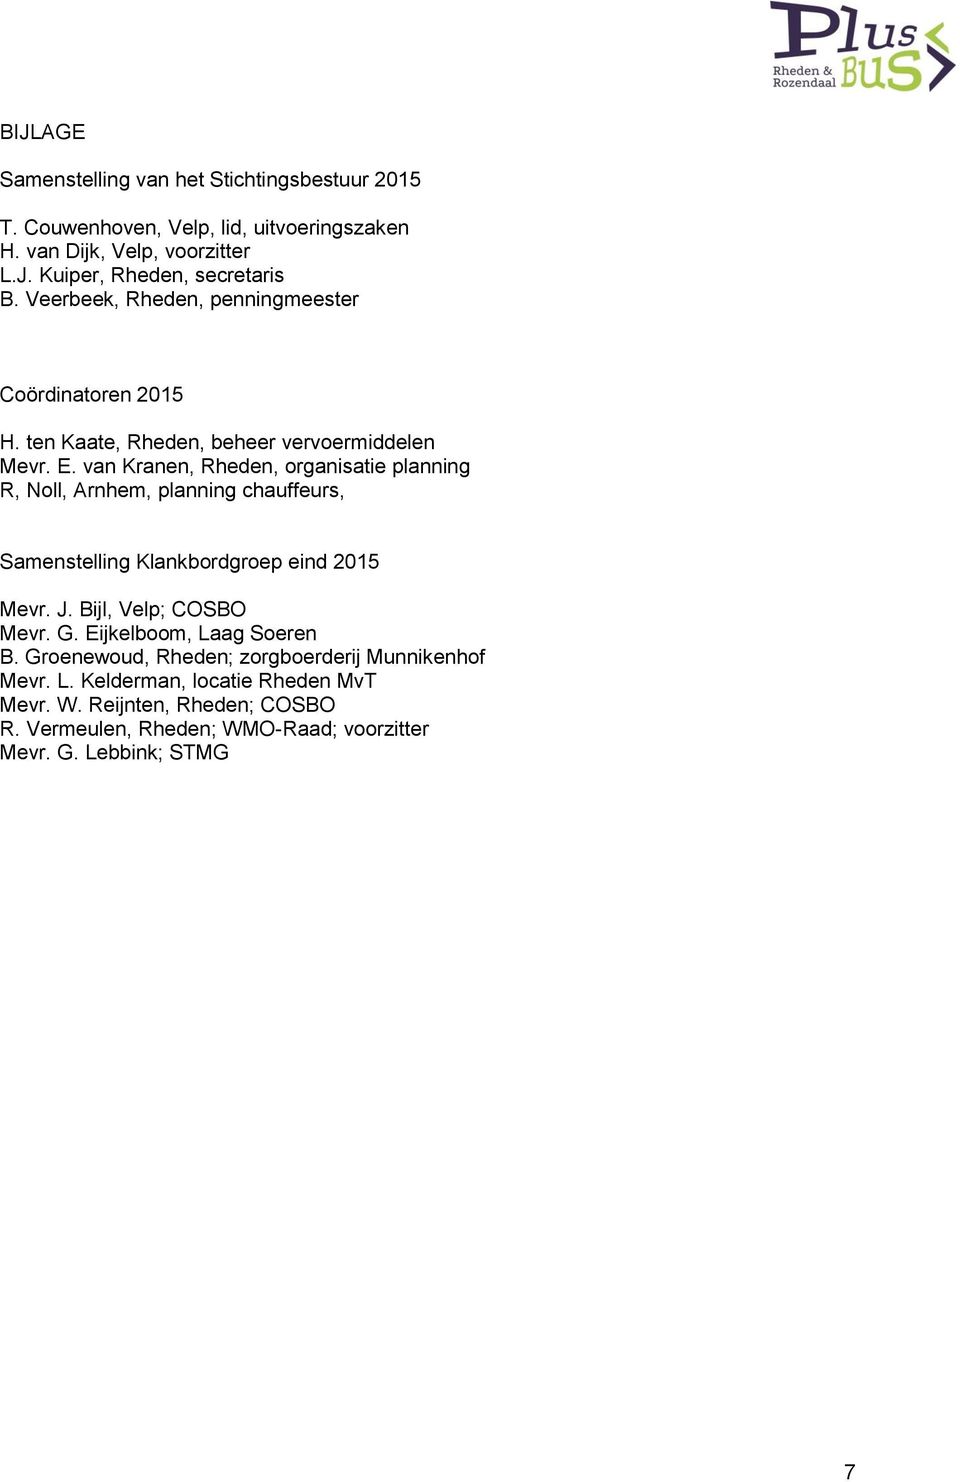 van Kranen, Rheden, organisatie planning R, Noll, Arnhem, planning chauffeurs, Samenstelling Klankbordgroep eind 2015 Mevr. J. Bijl, Velp; COSBO Mevr. G.